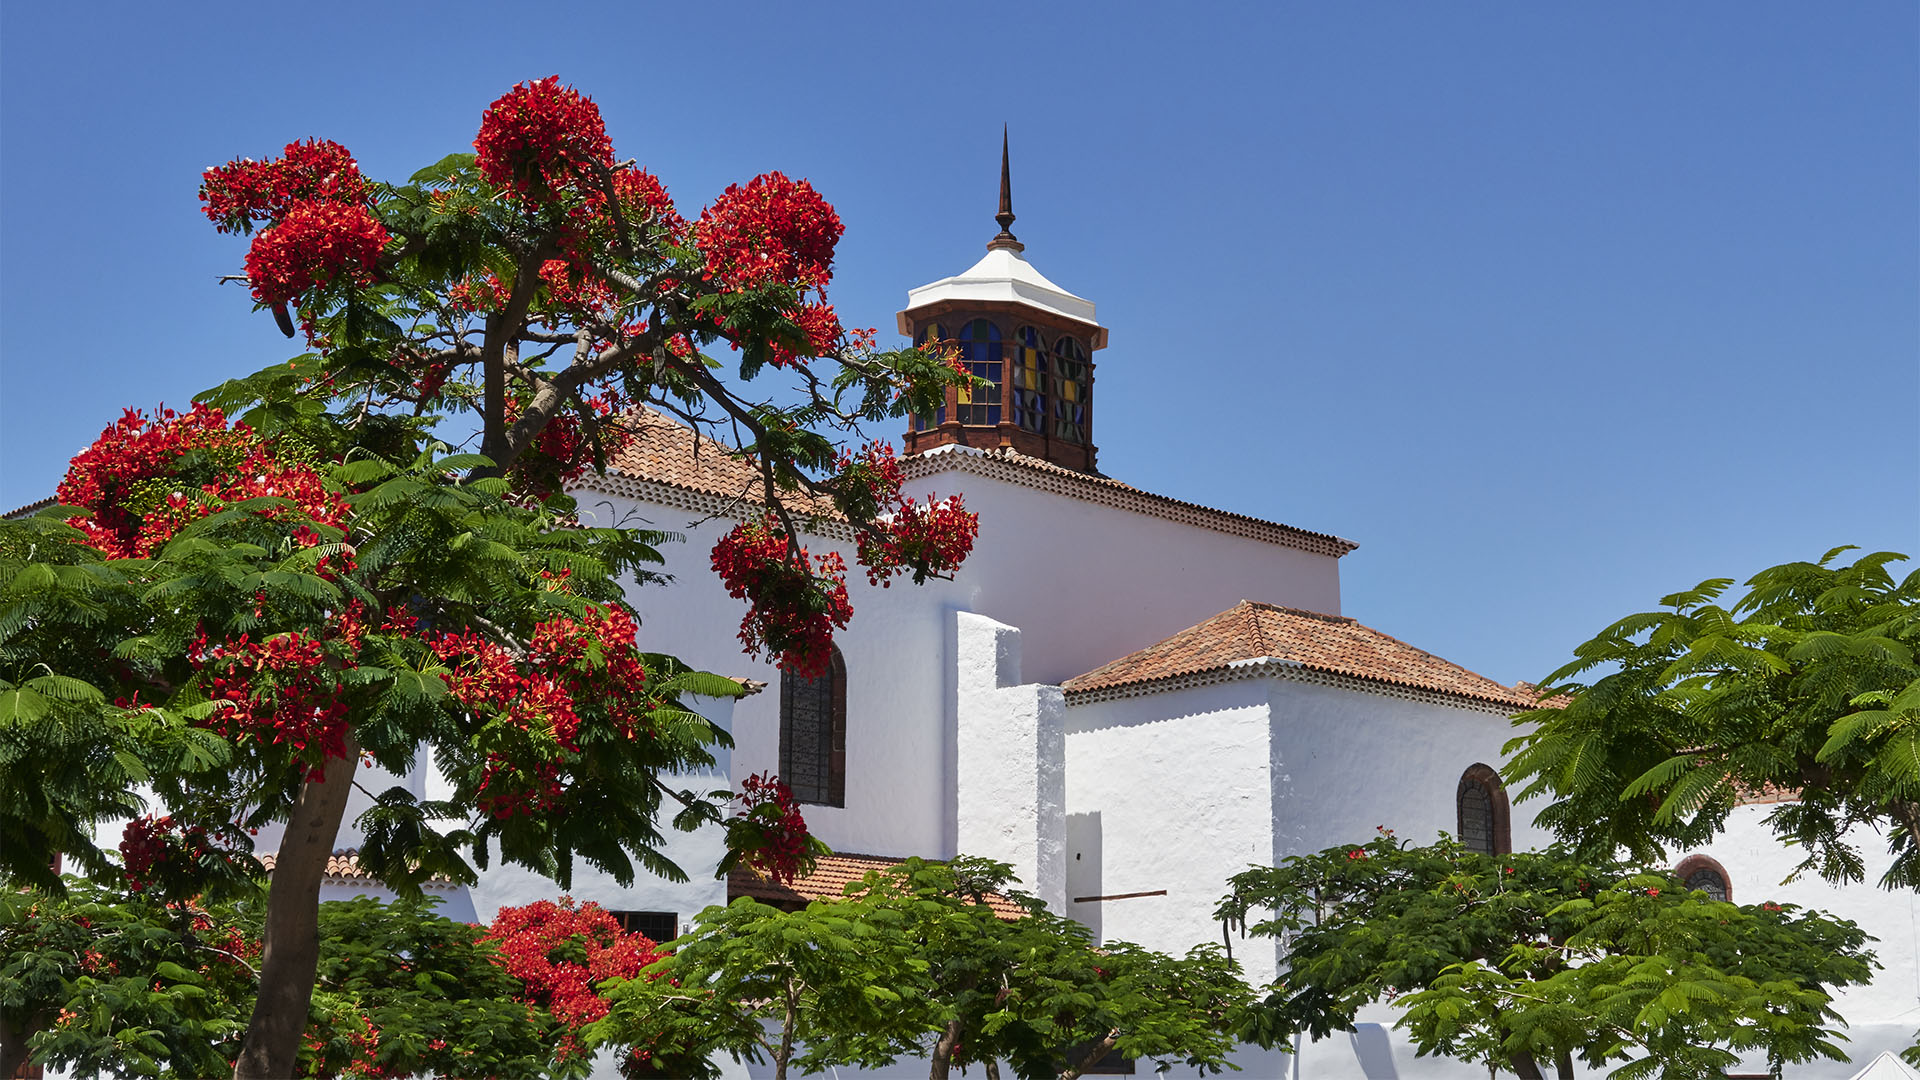 Santa Cruz de Tenerife – Nuestra Señora de la Concepción.